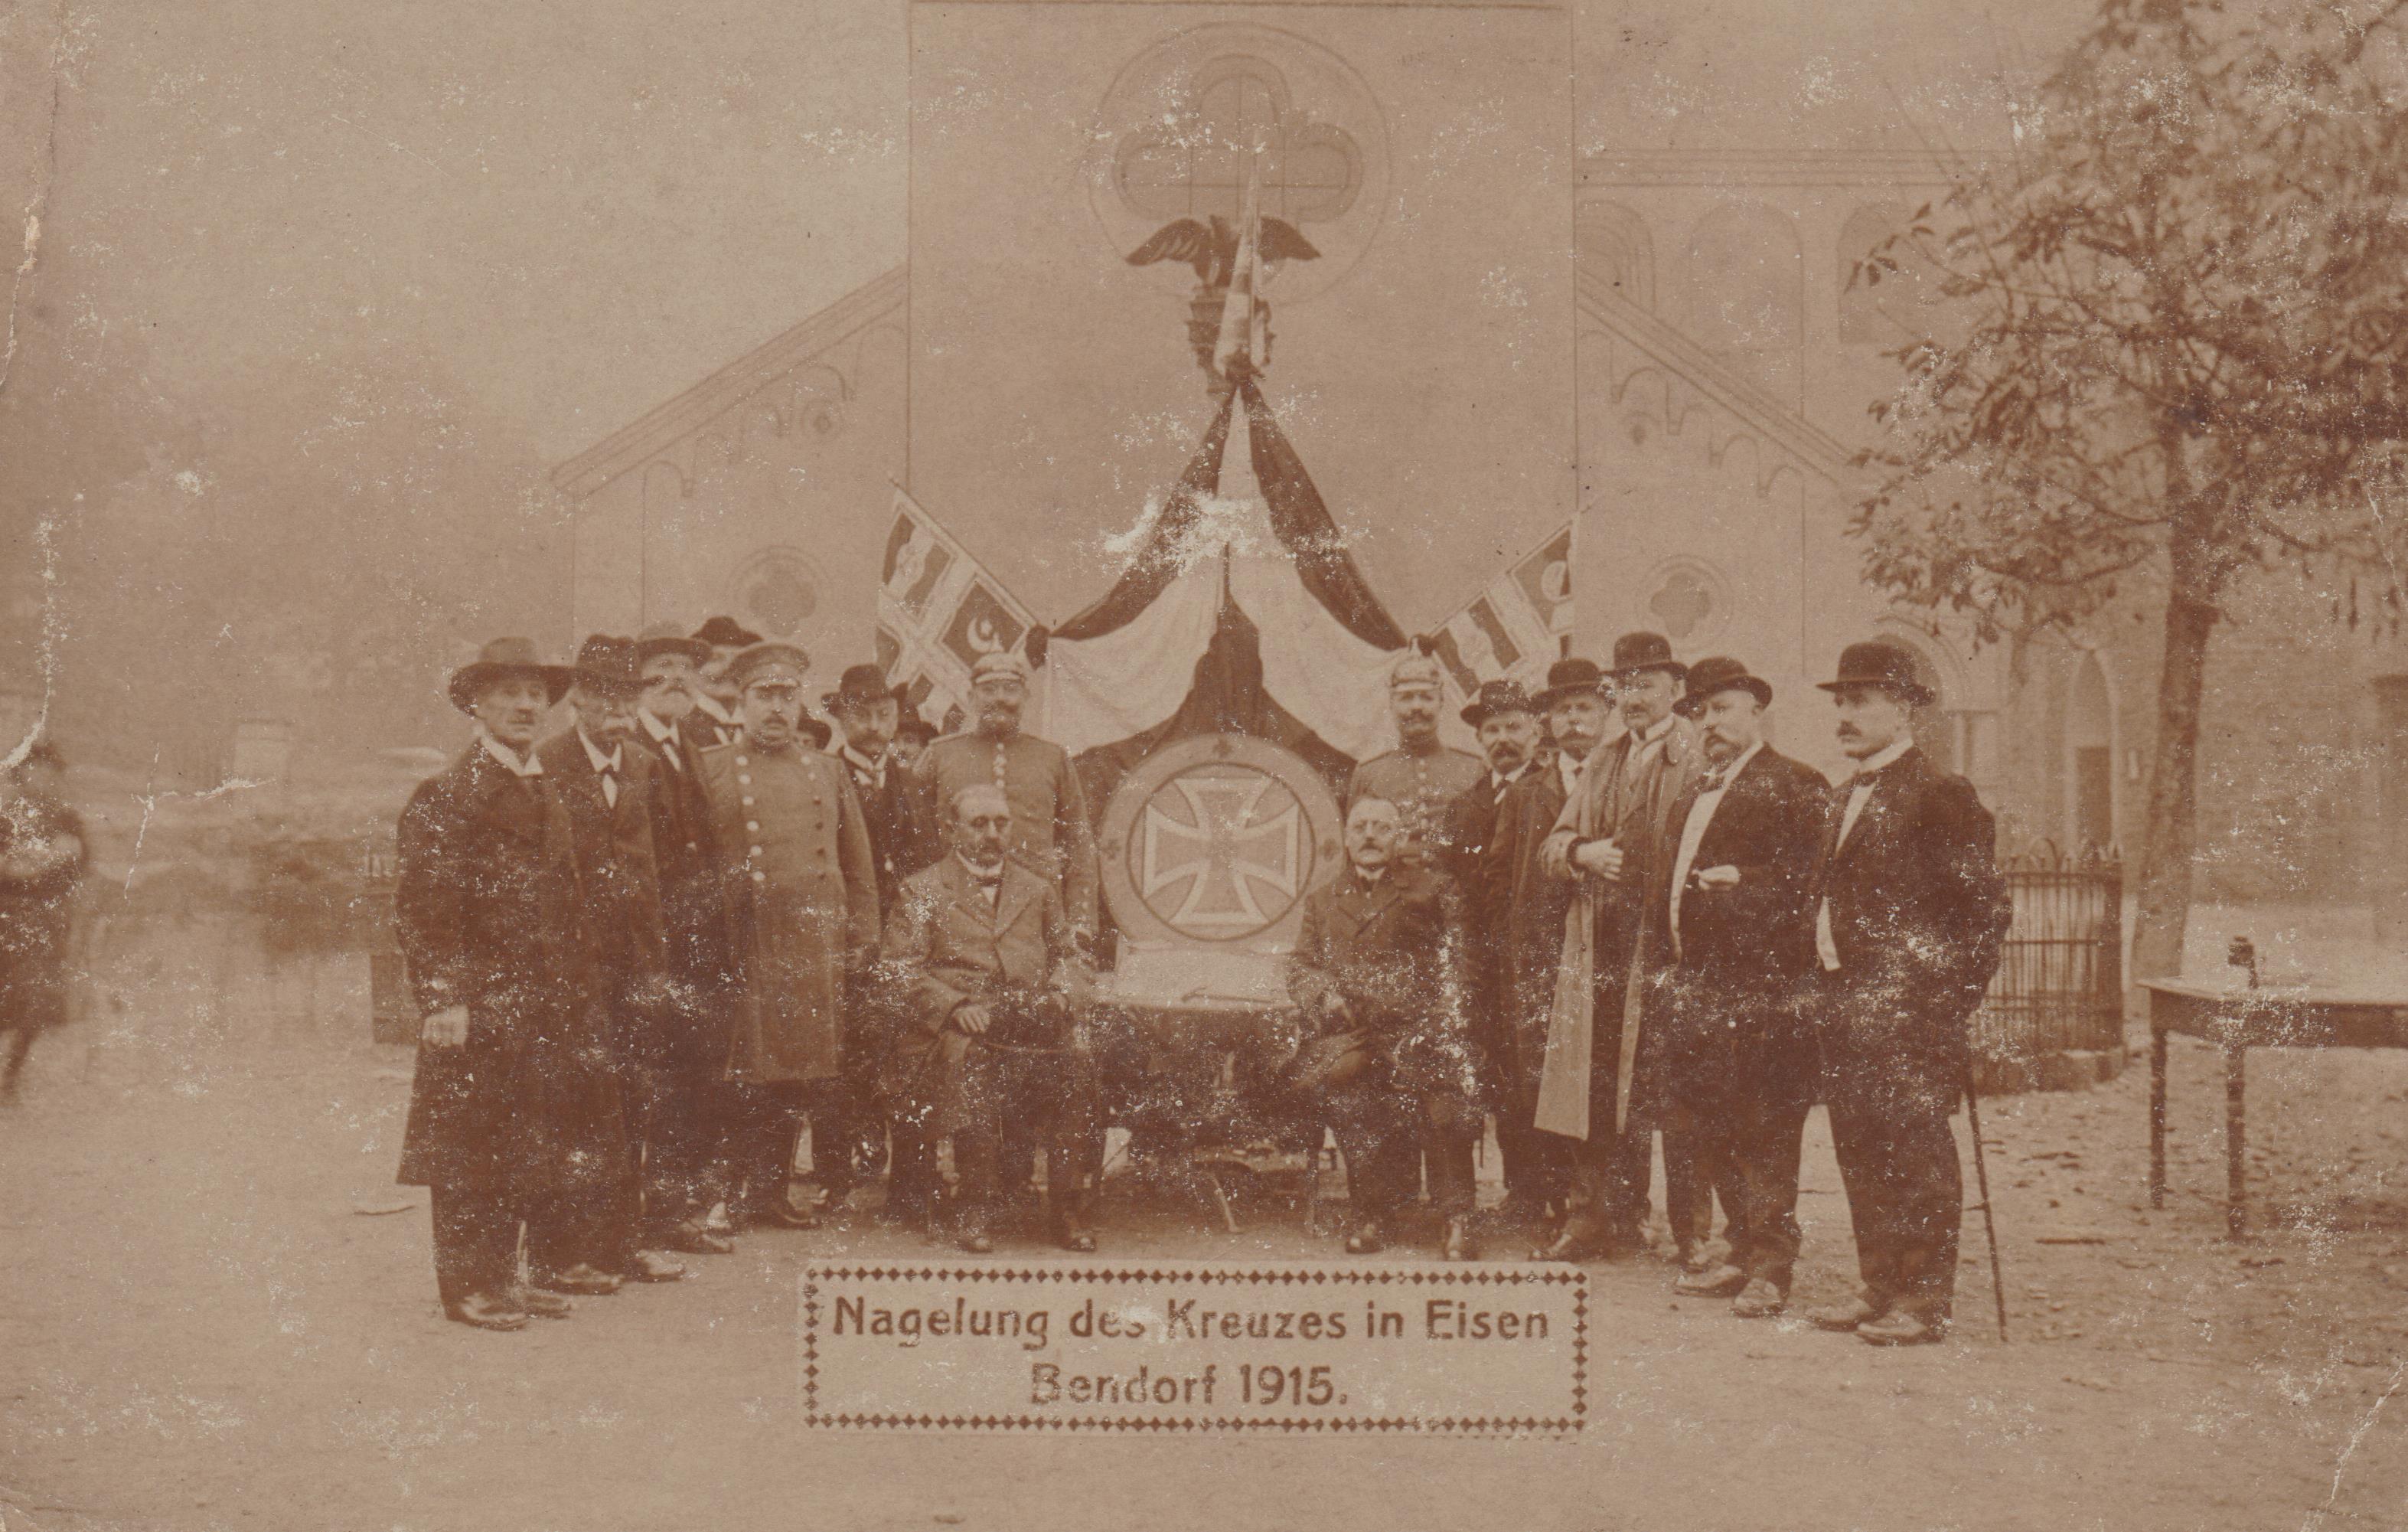 Nagelung des Kreuzes in Eisen, Bendorf 1915 (Stiftung Sayner Hütte, Rheinisches Eisenkunstguss-Museum CC BY-NC-SA)